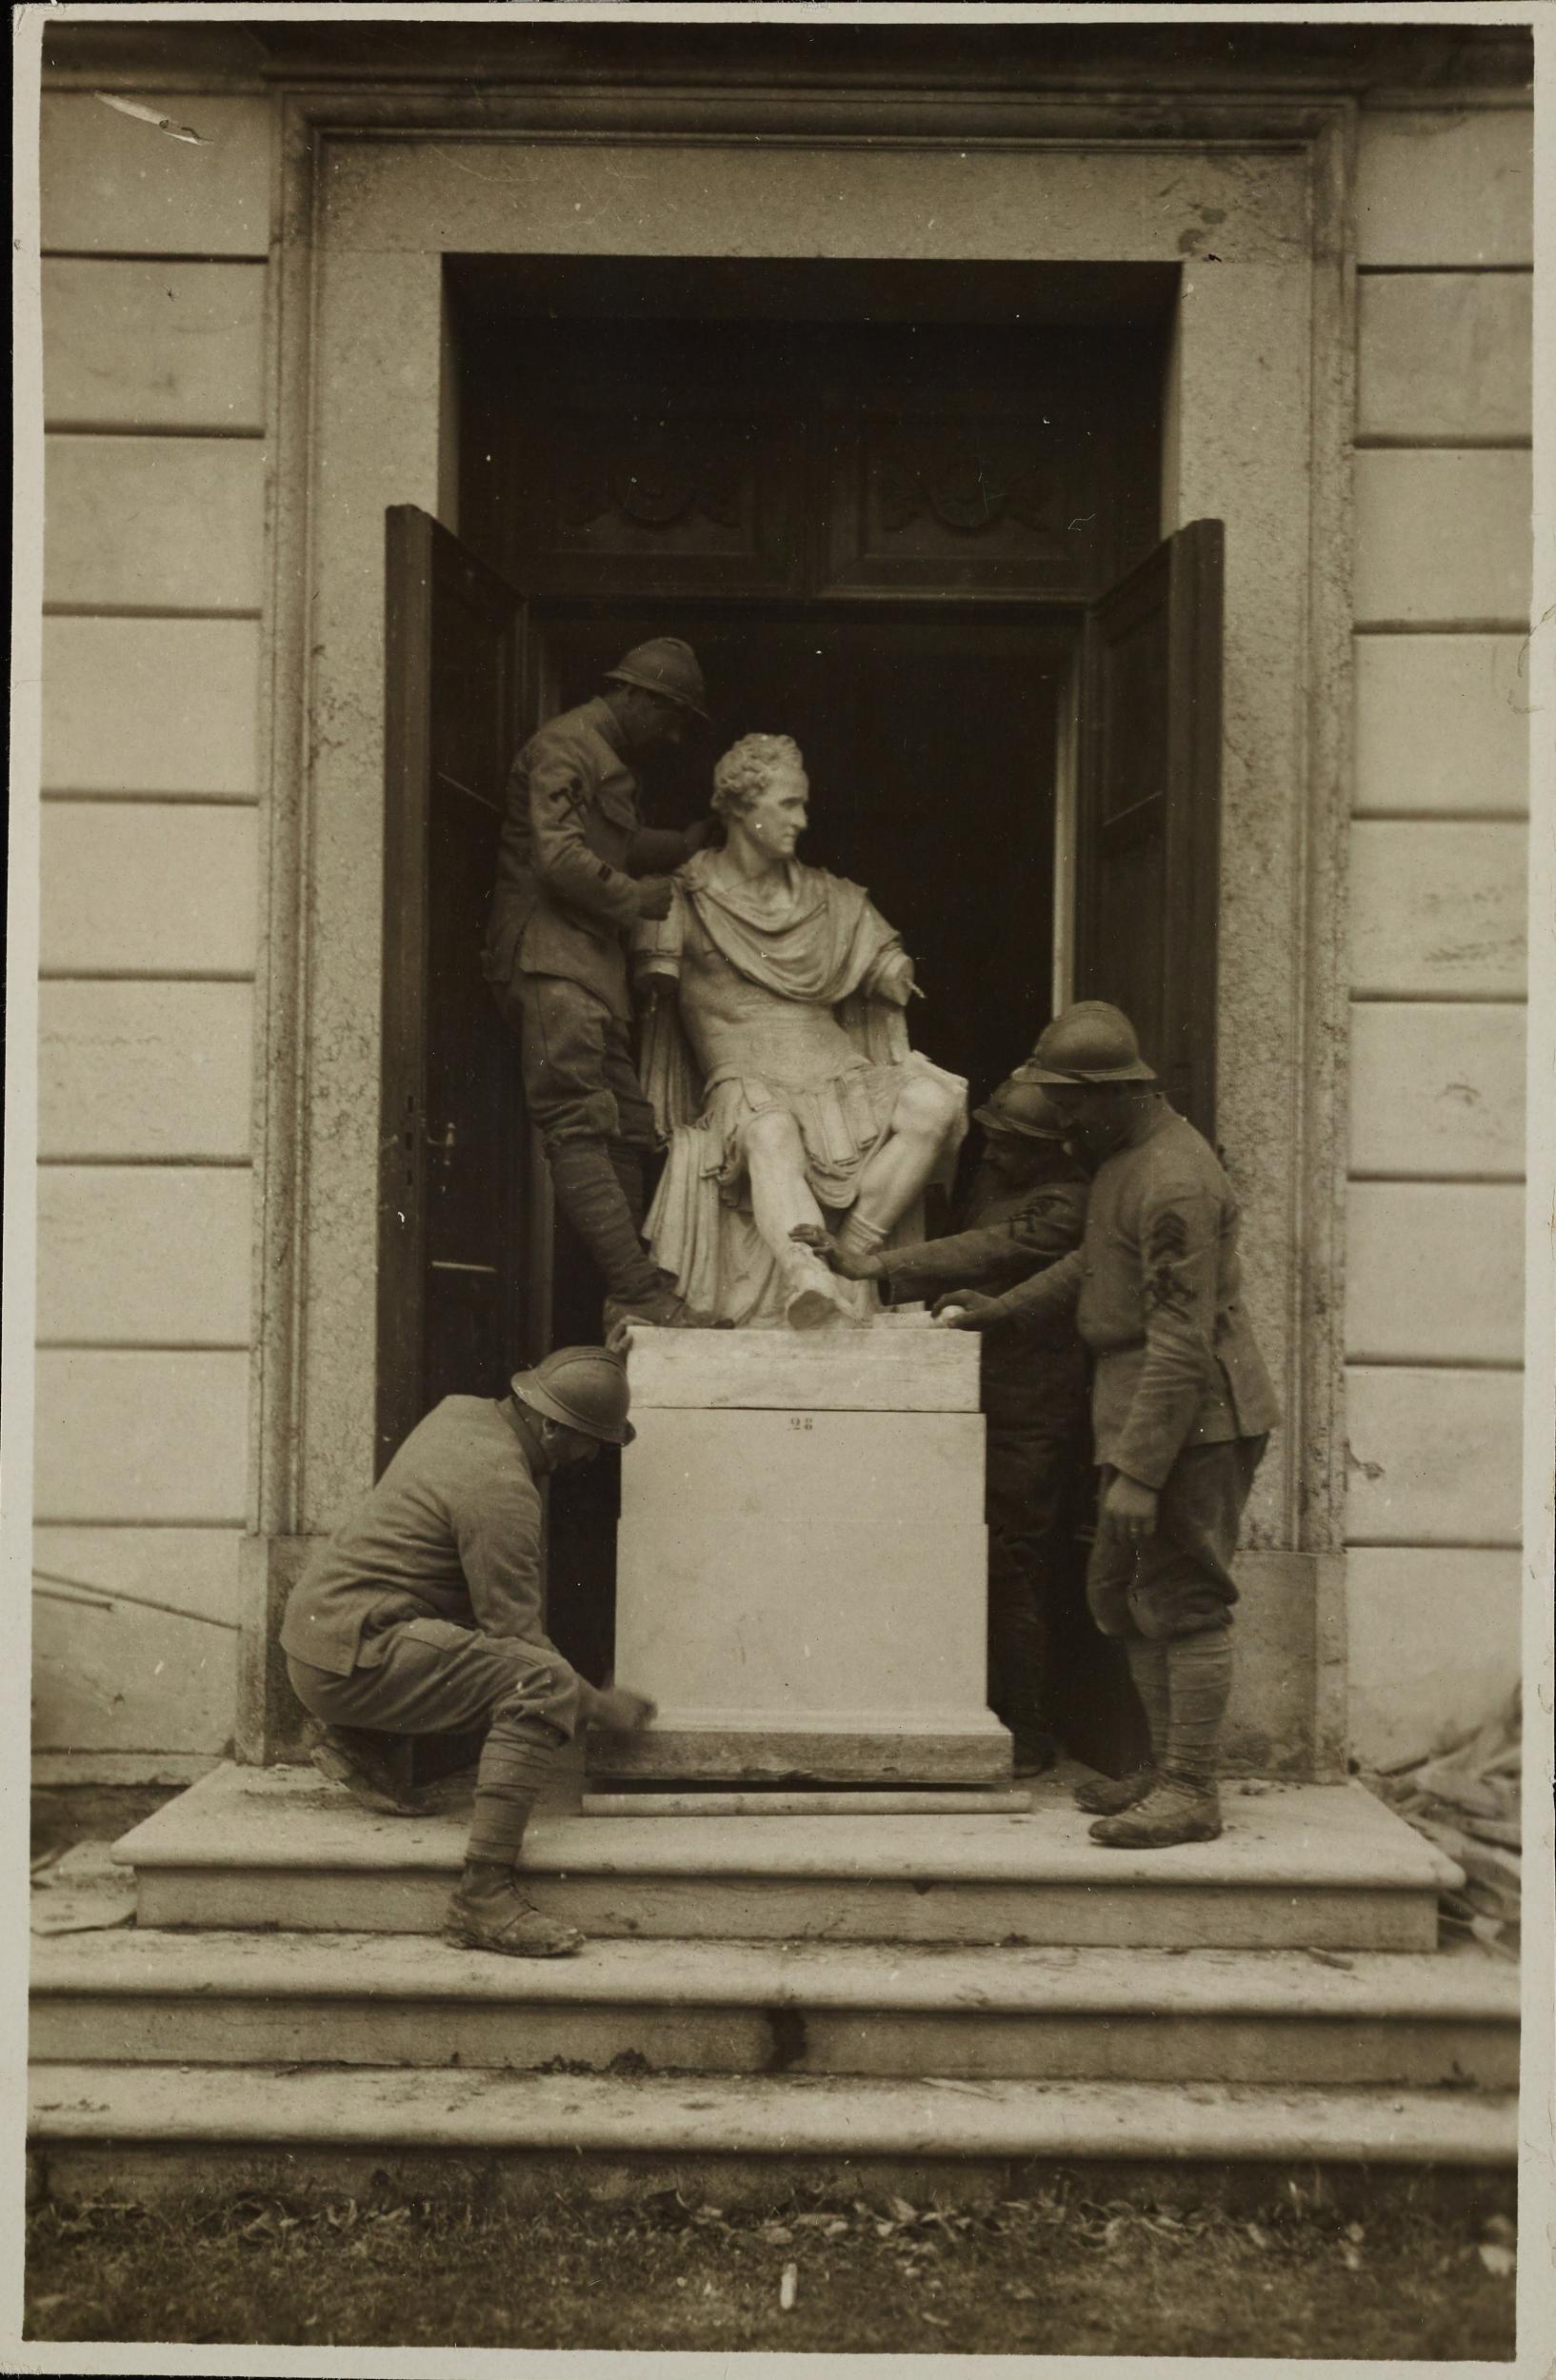 Fotografo non identificato, Possagno - Museo Canova, Gipsoteca, trasporto della statua di George Washington dopo i bombardamenti, gelatina ai sali d'argento, MPI306556